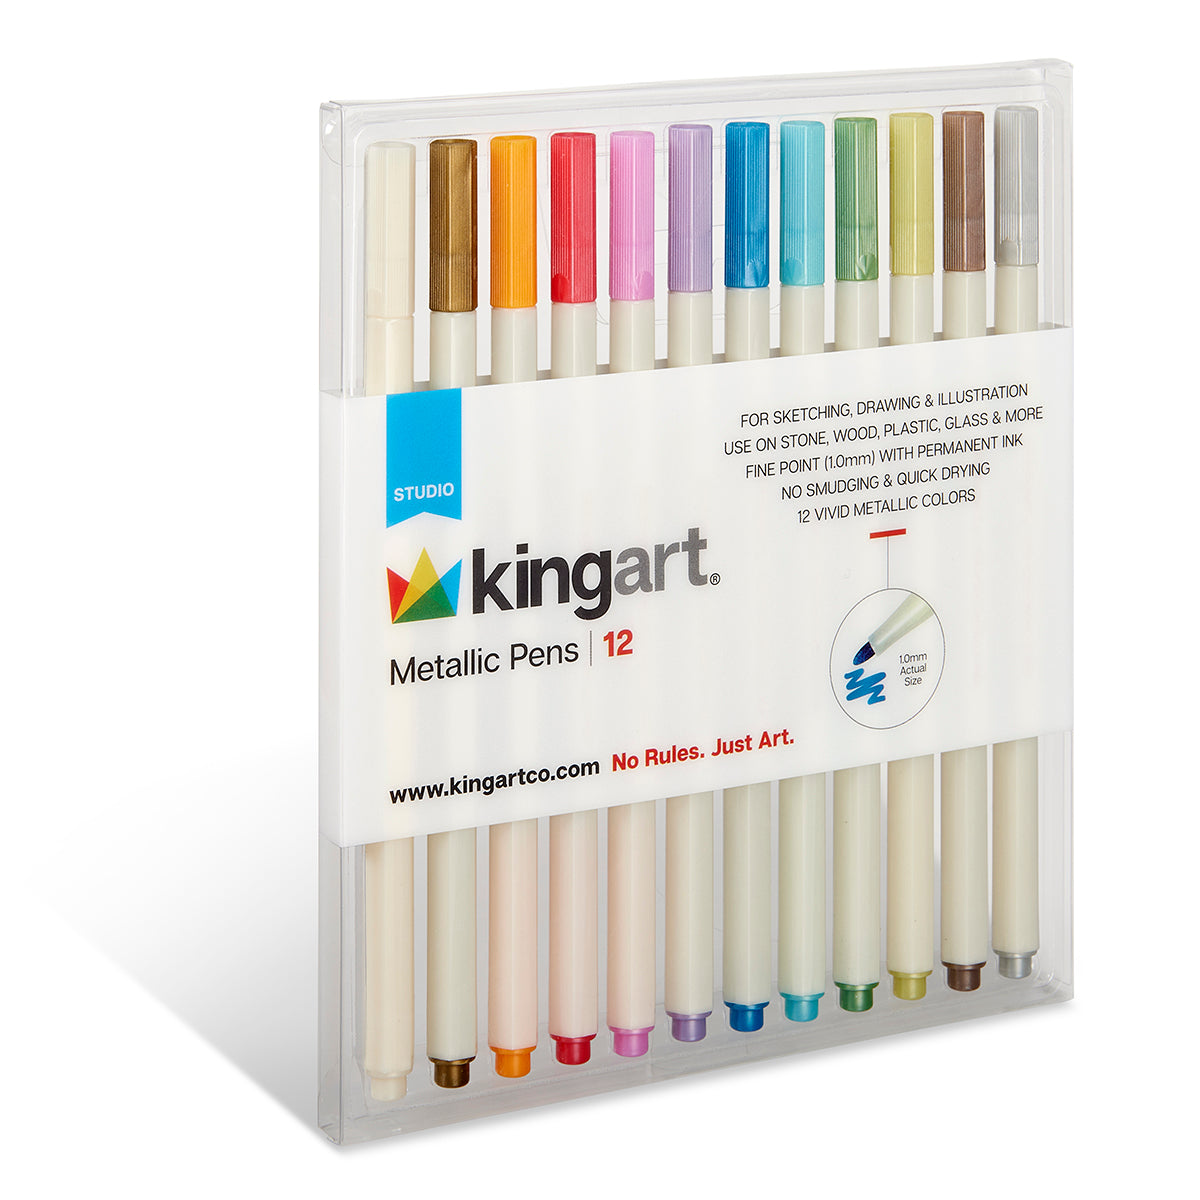 KINGART® PRO Extra Fine Point Acrylic Metallic Paint Pen Markers